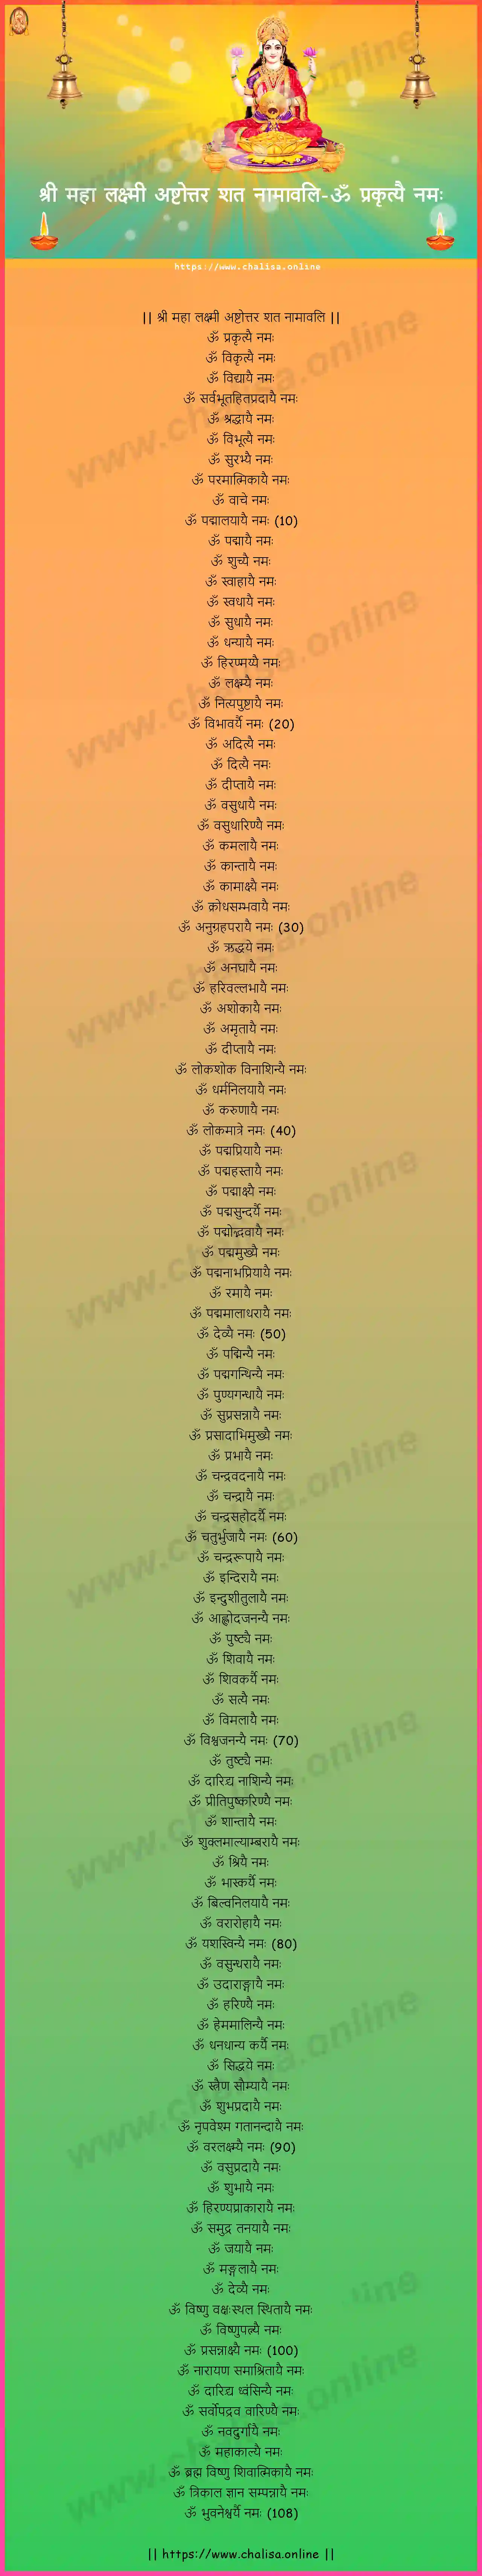 om-prakrtyai-namah-sree-maha-lakshmi-ashtottara-sata-naamaavali-devanagari-devanagari-lyrics-download